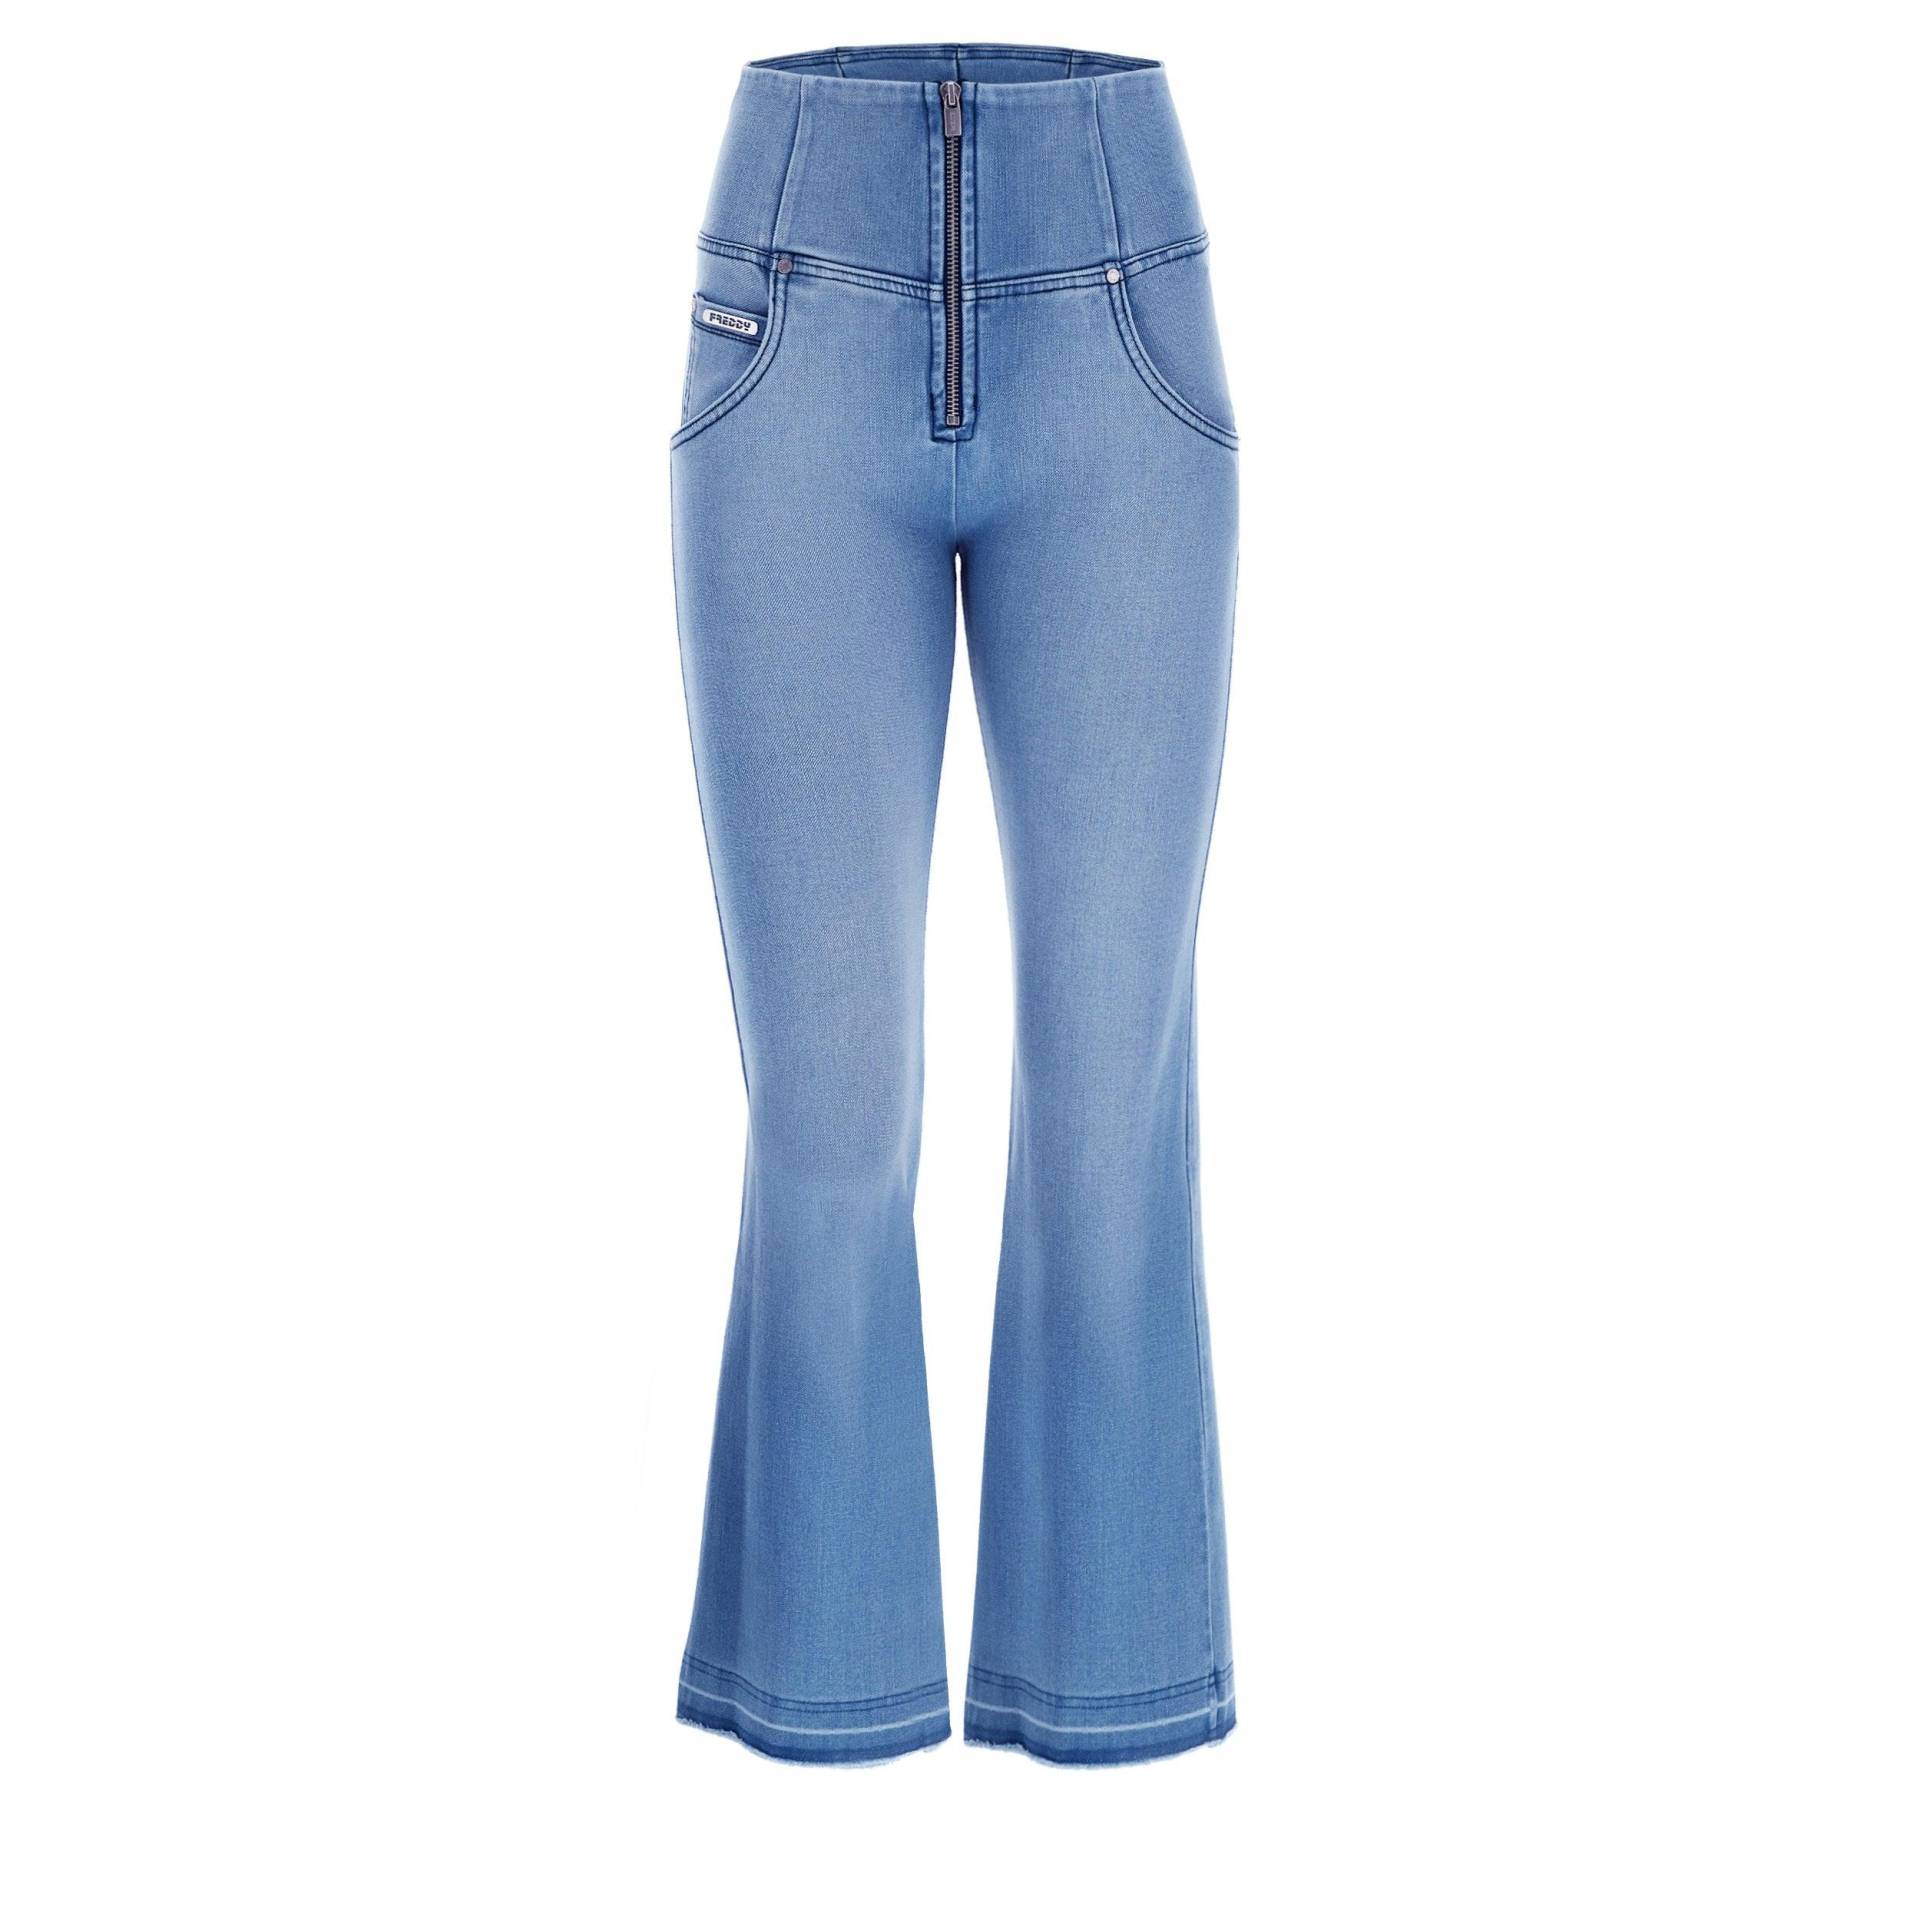 Wr.up® Push-up-jeans In 7/8-länge Mit Flared-saum Und Raw-edge-effekt Damen Blau Denim L von FREDDY